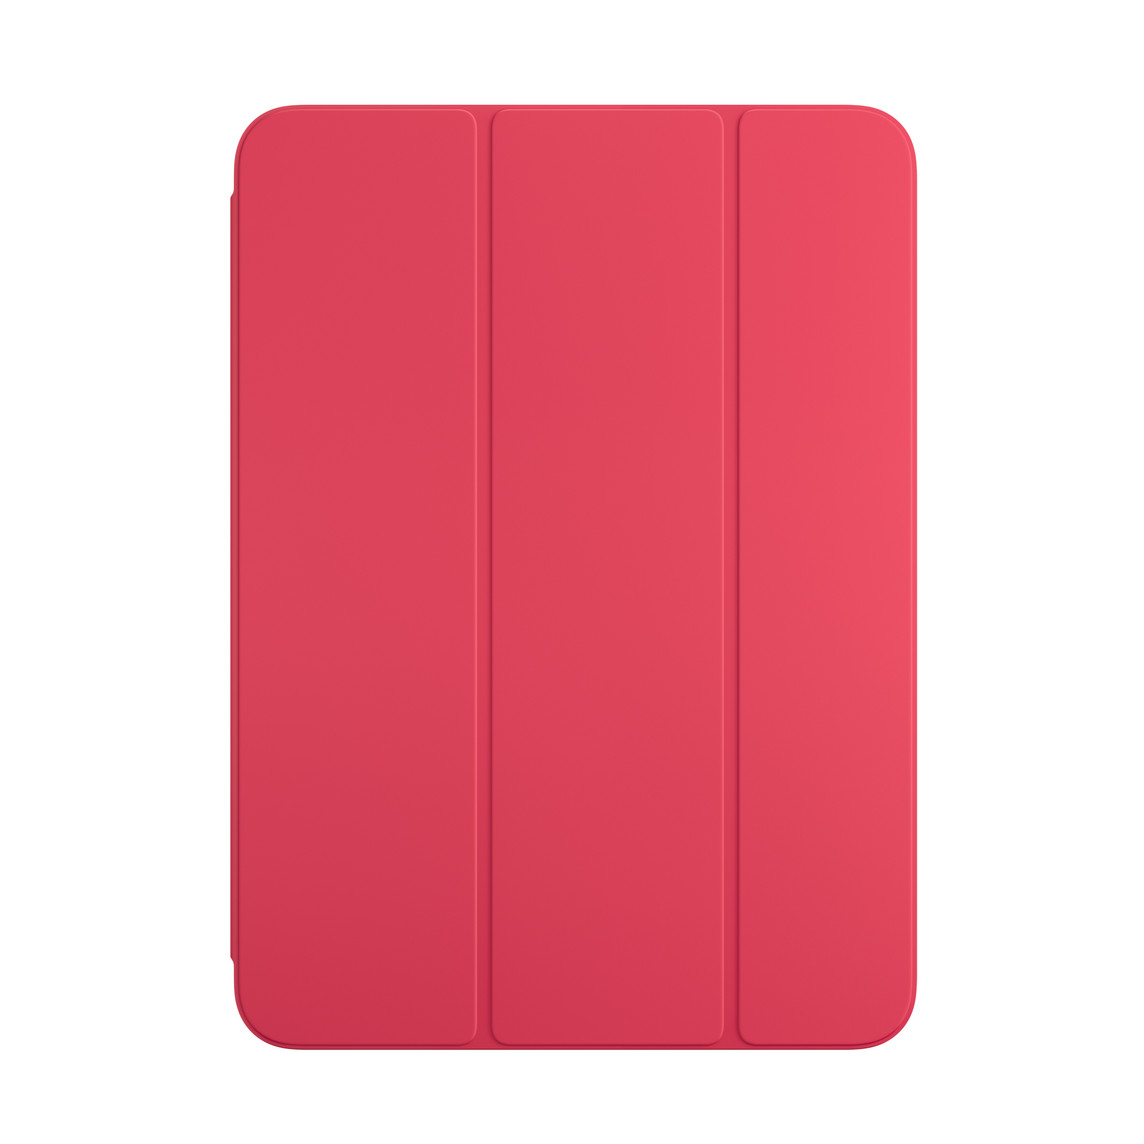 Vue avant du Smart Folio pour iPad pastèque